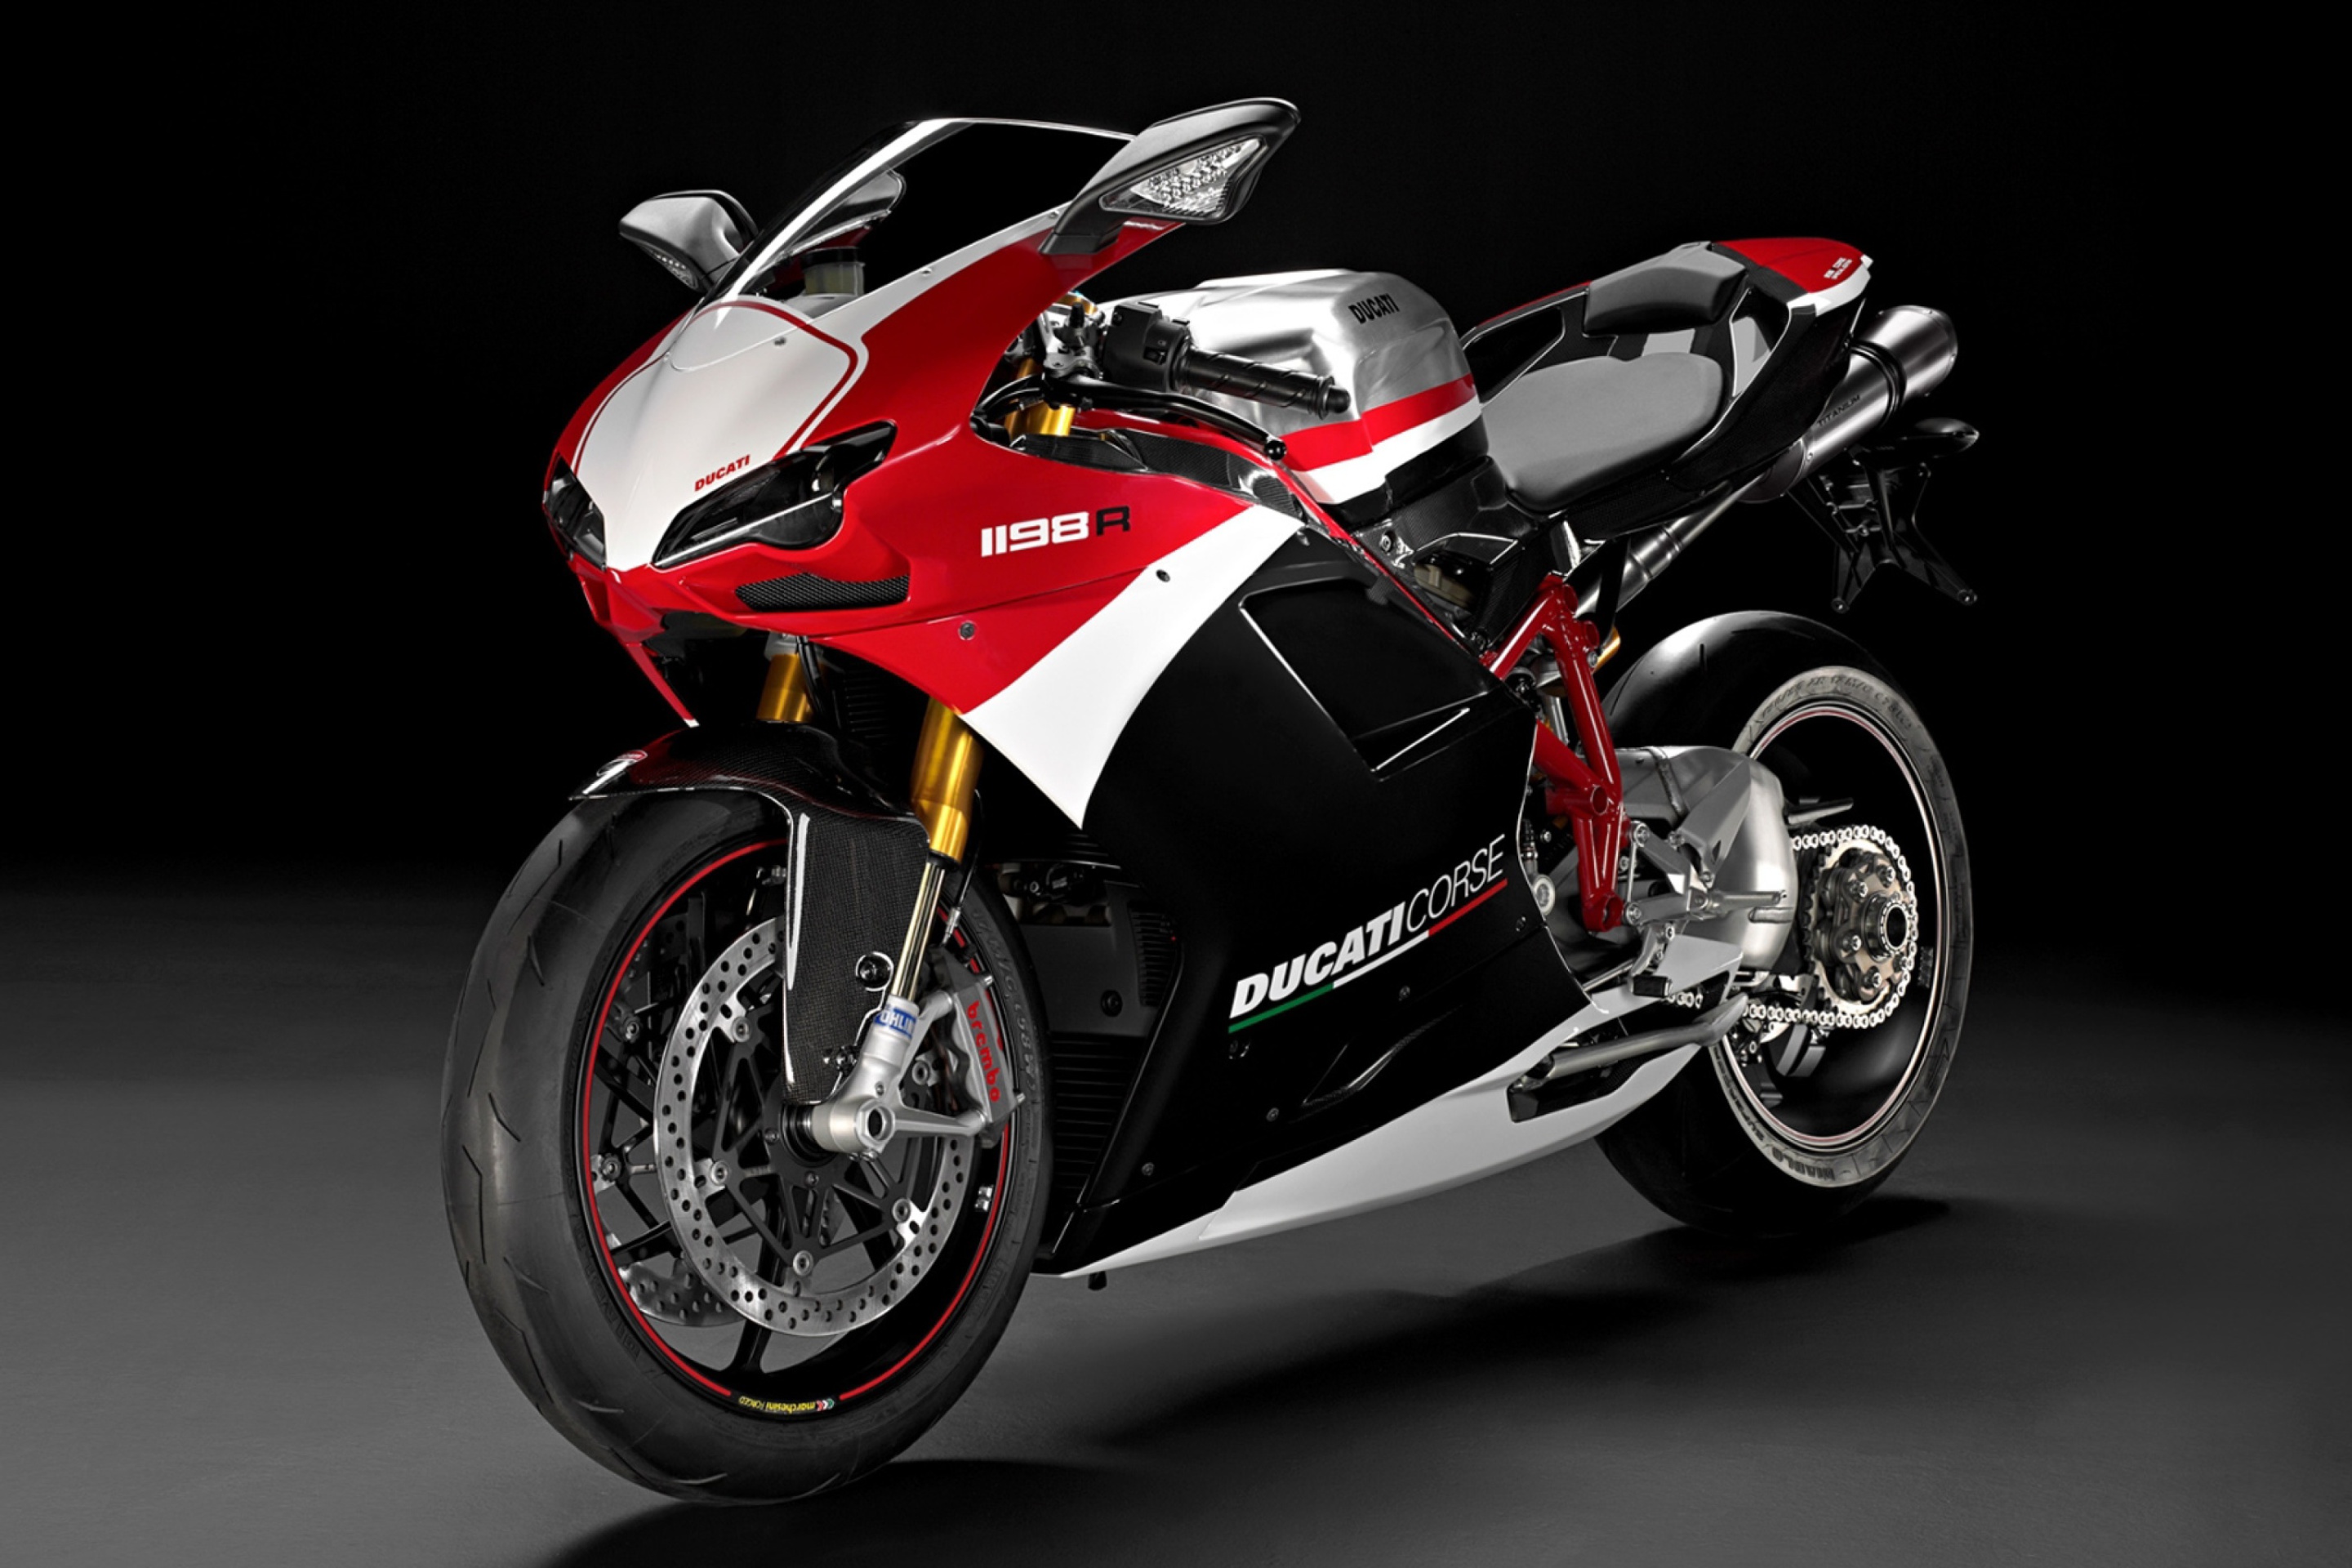 Ducati Superbike 1198 s